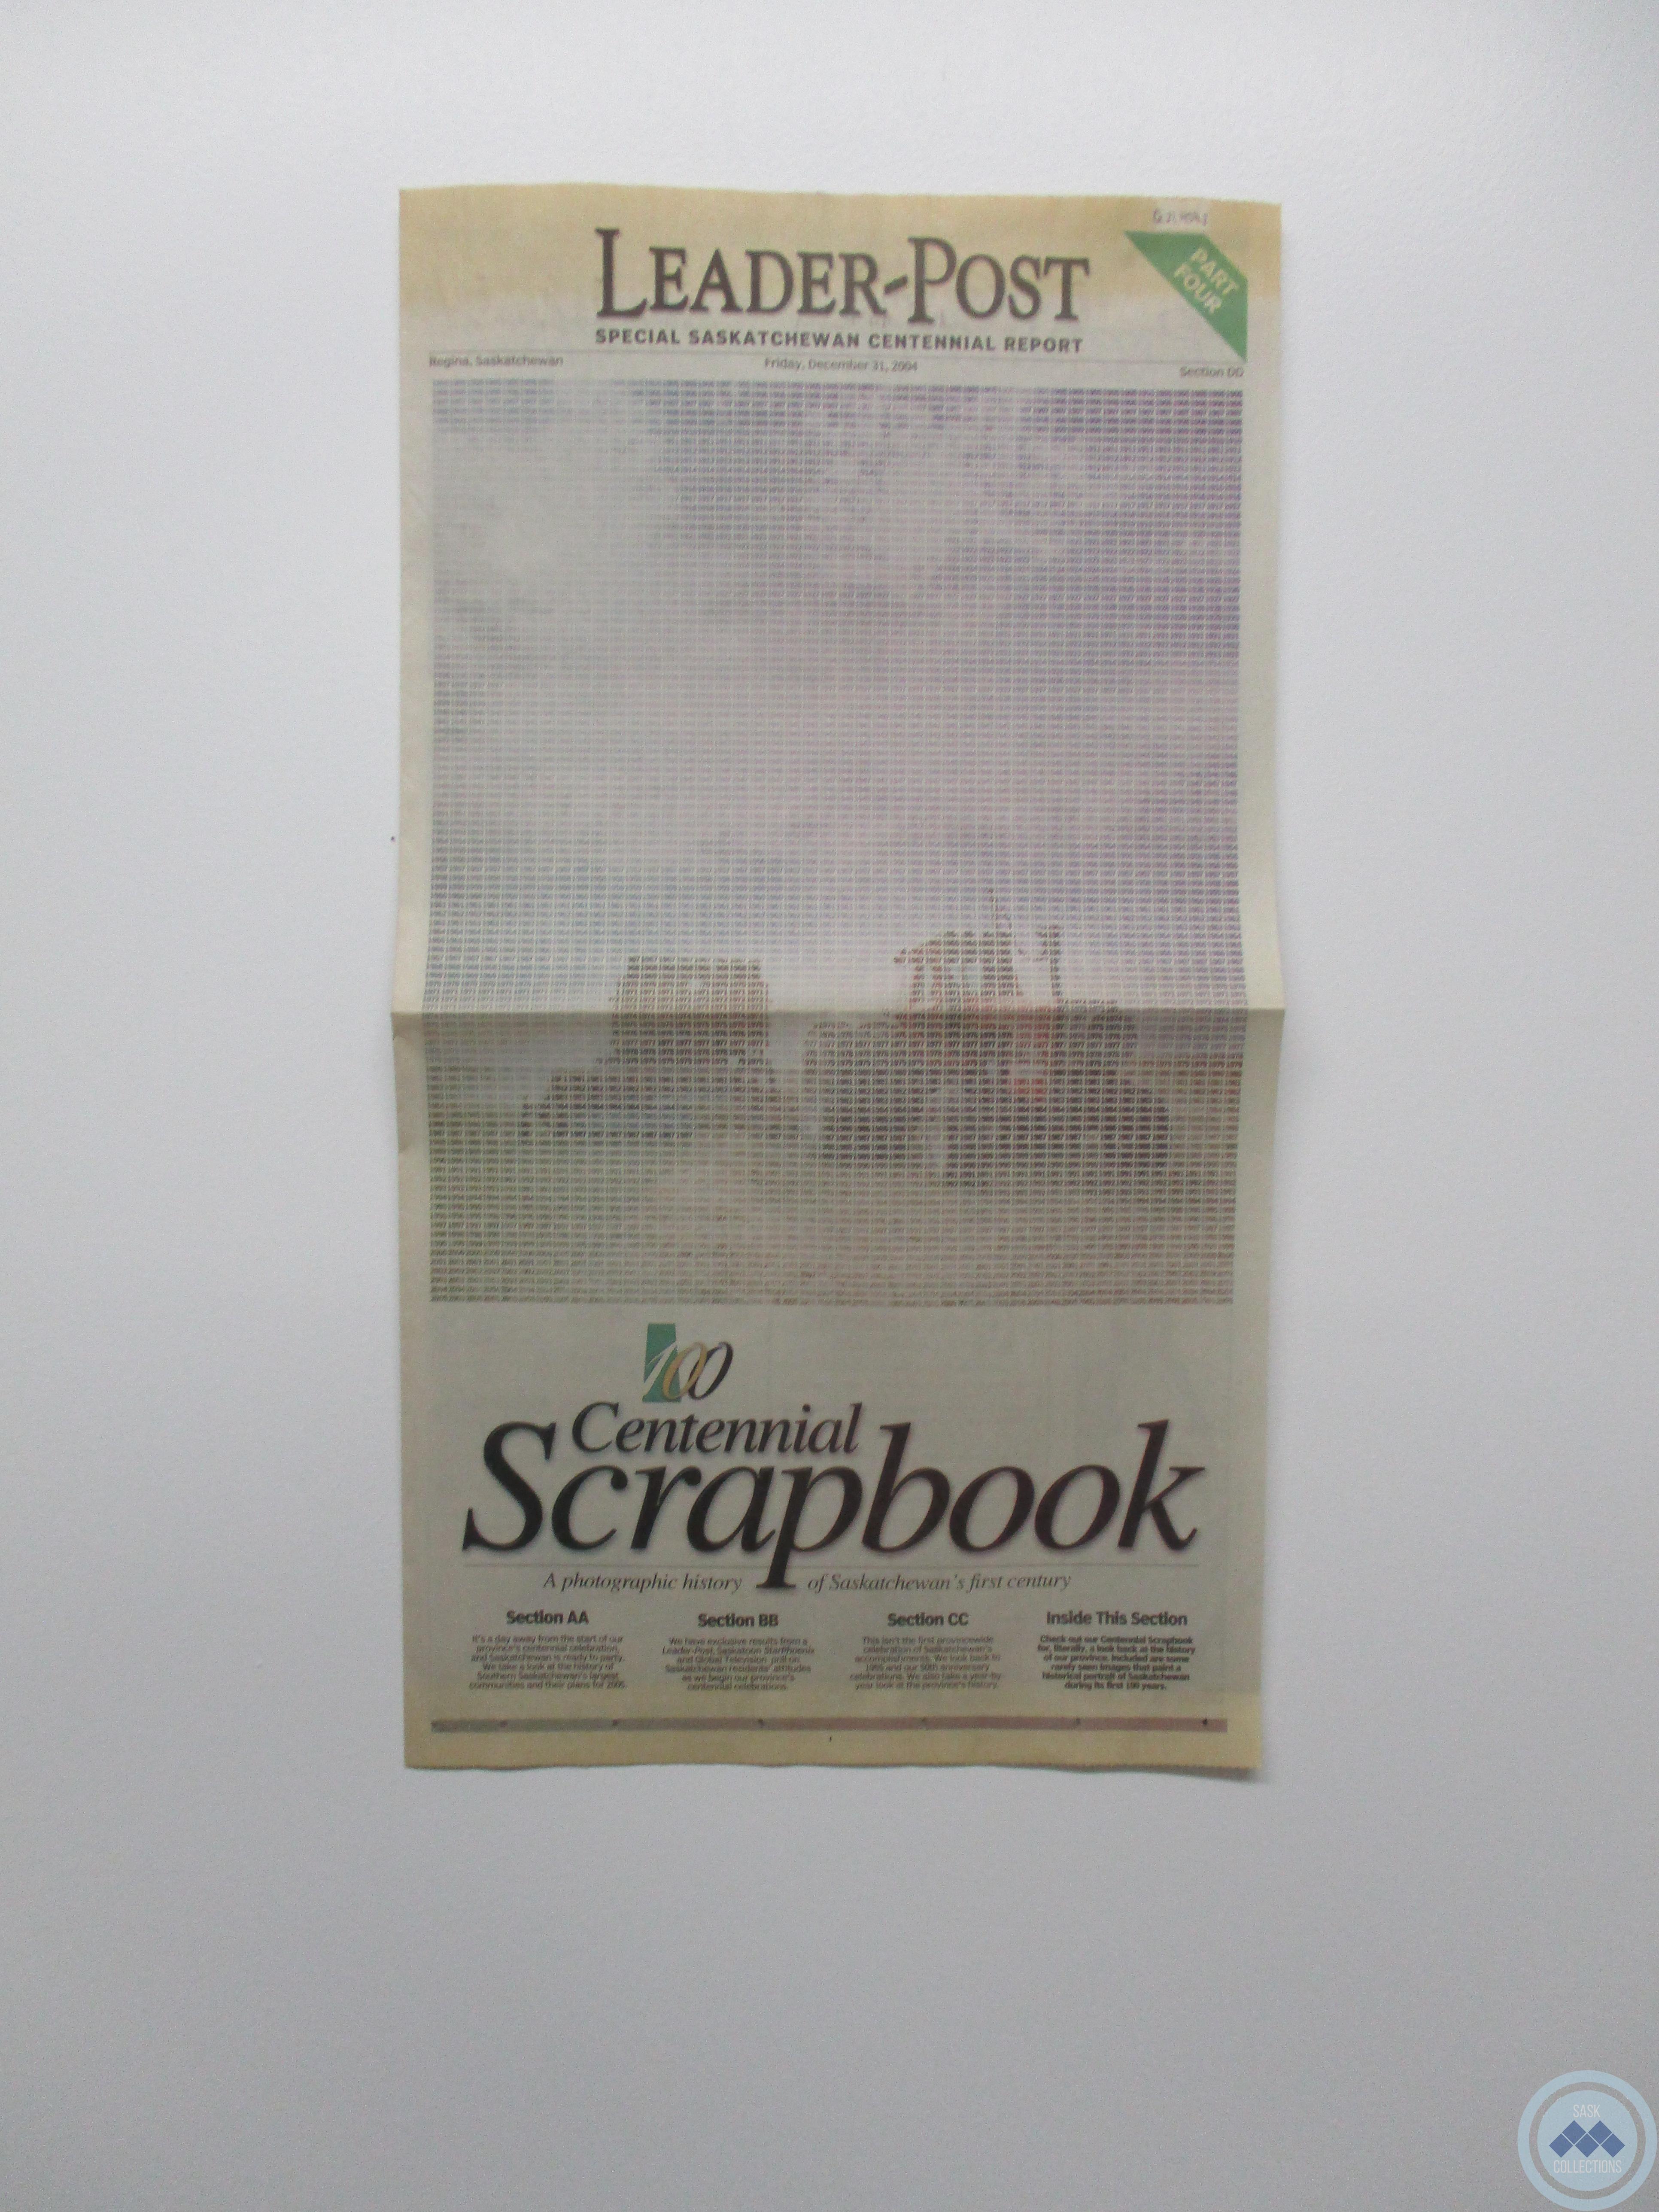 The Leader-Post: “Special Saskatchewan Centennial Report” (December 31, 2004)